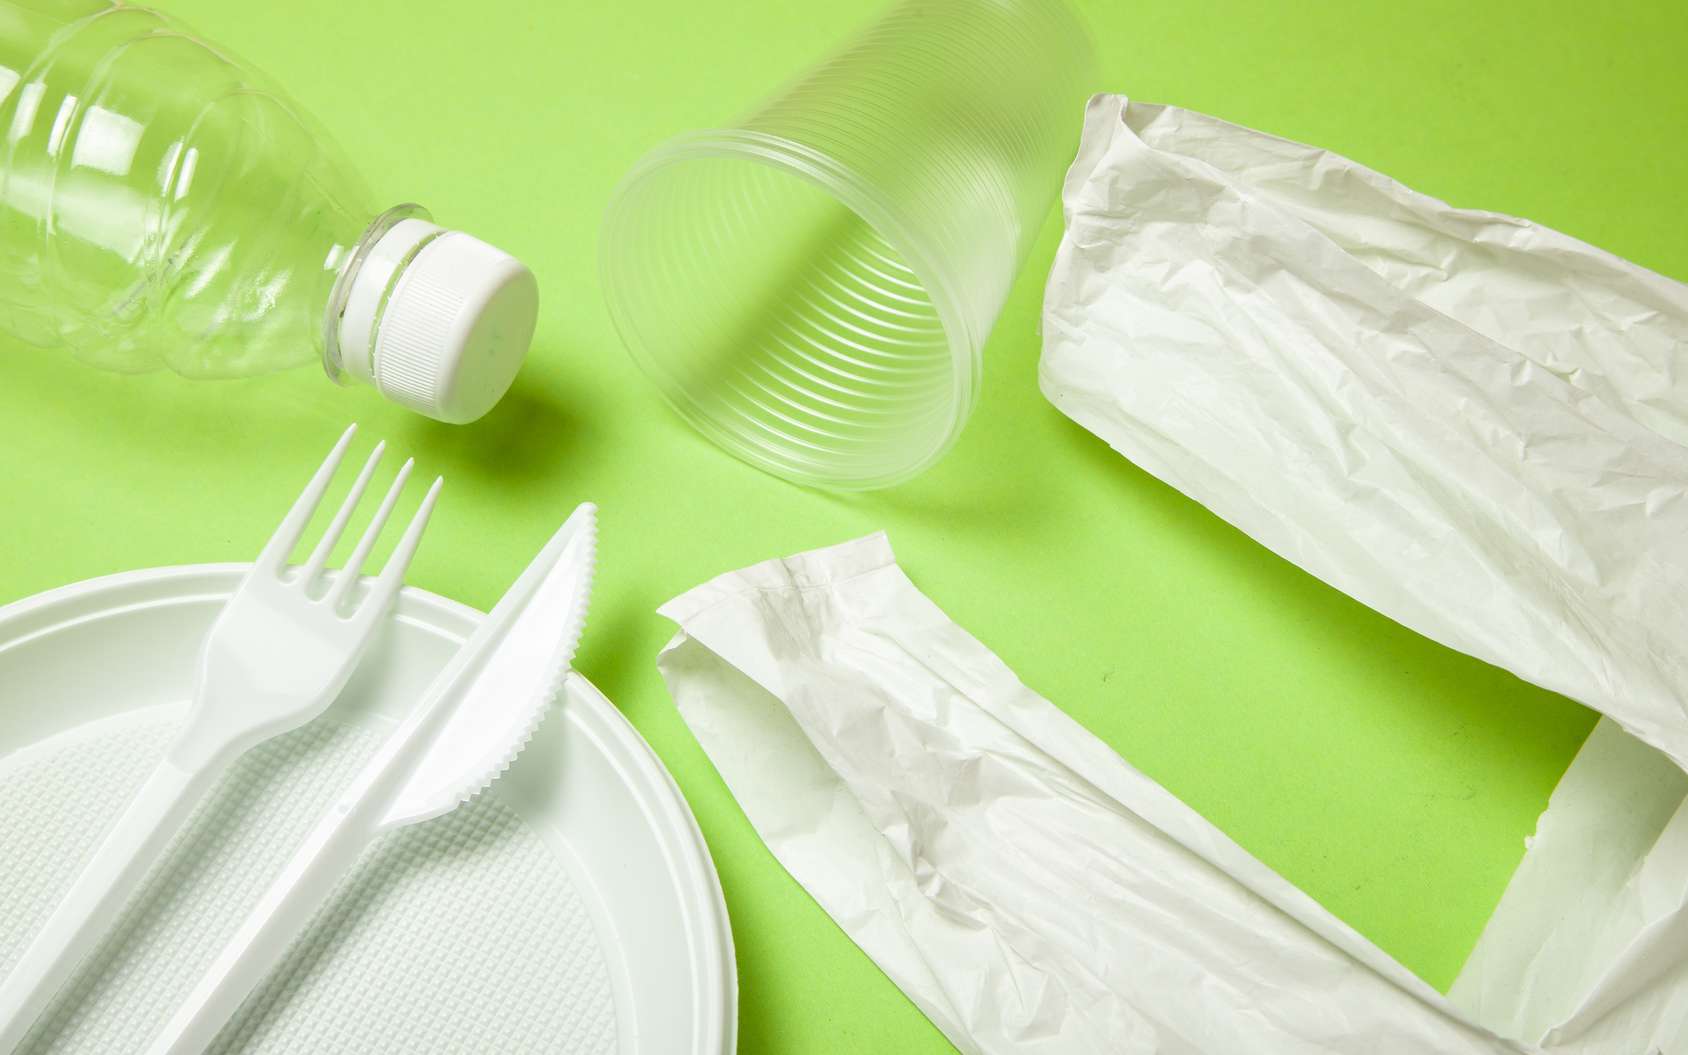 Objets en plastique : lesquels peut-on remplacer et par quoi ?